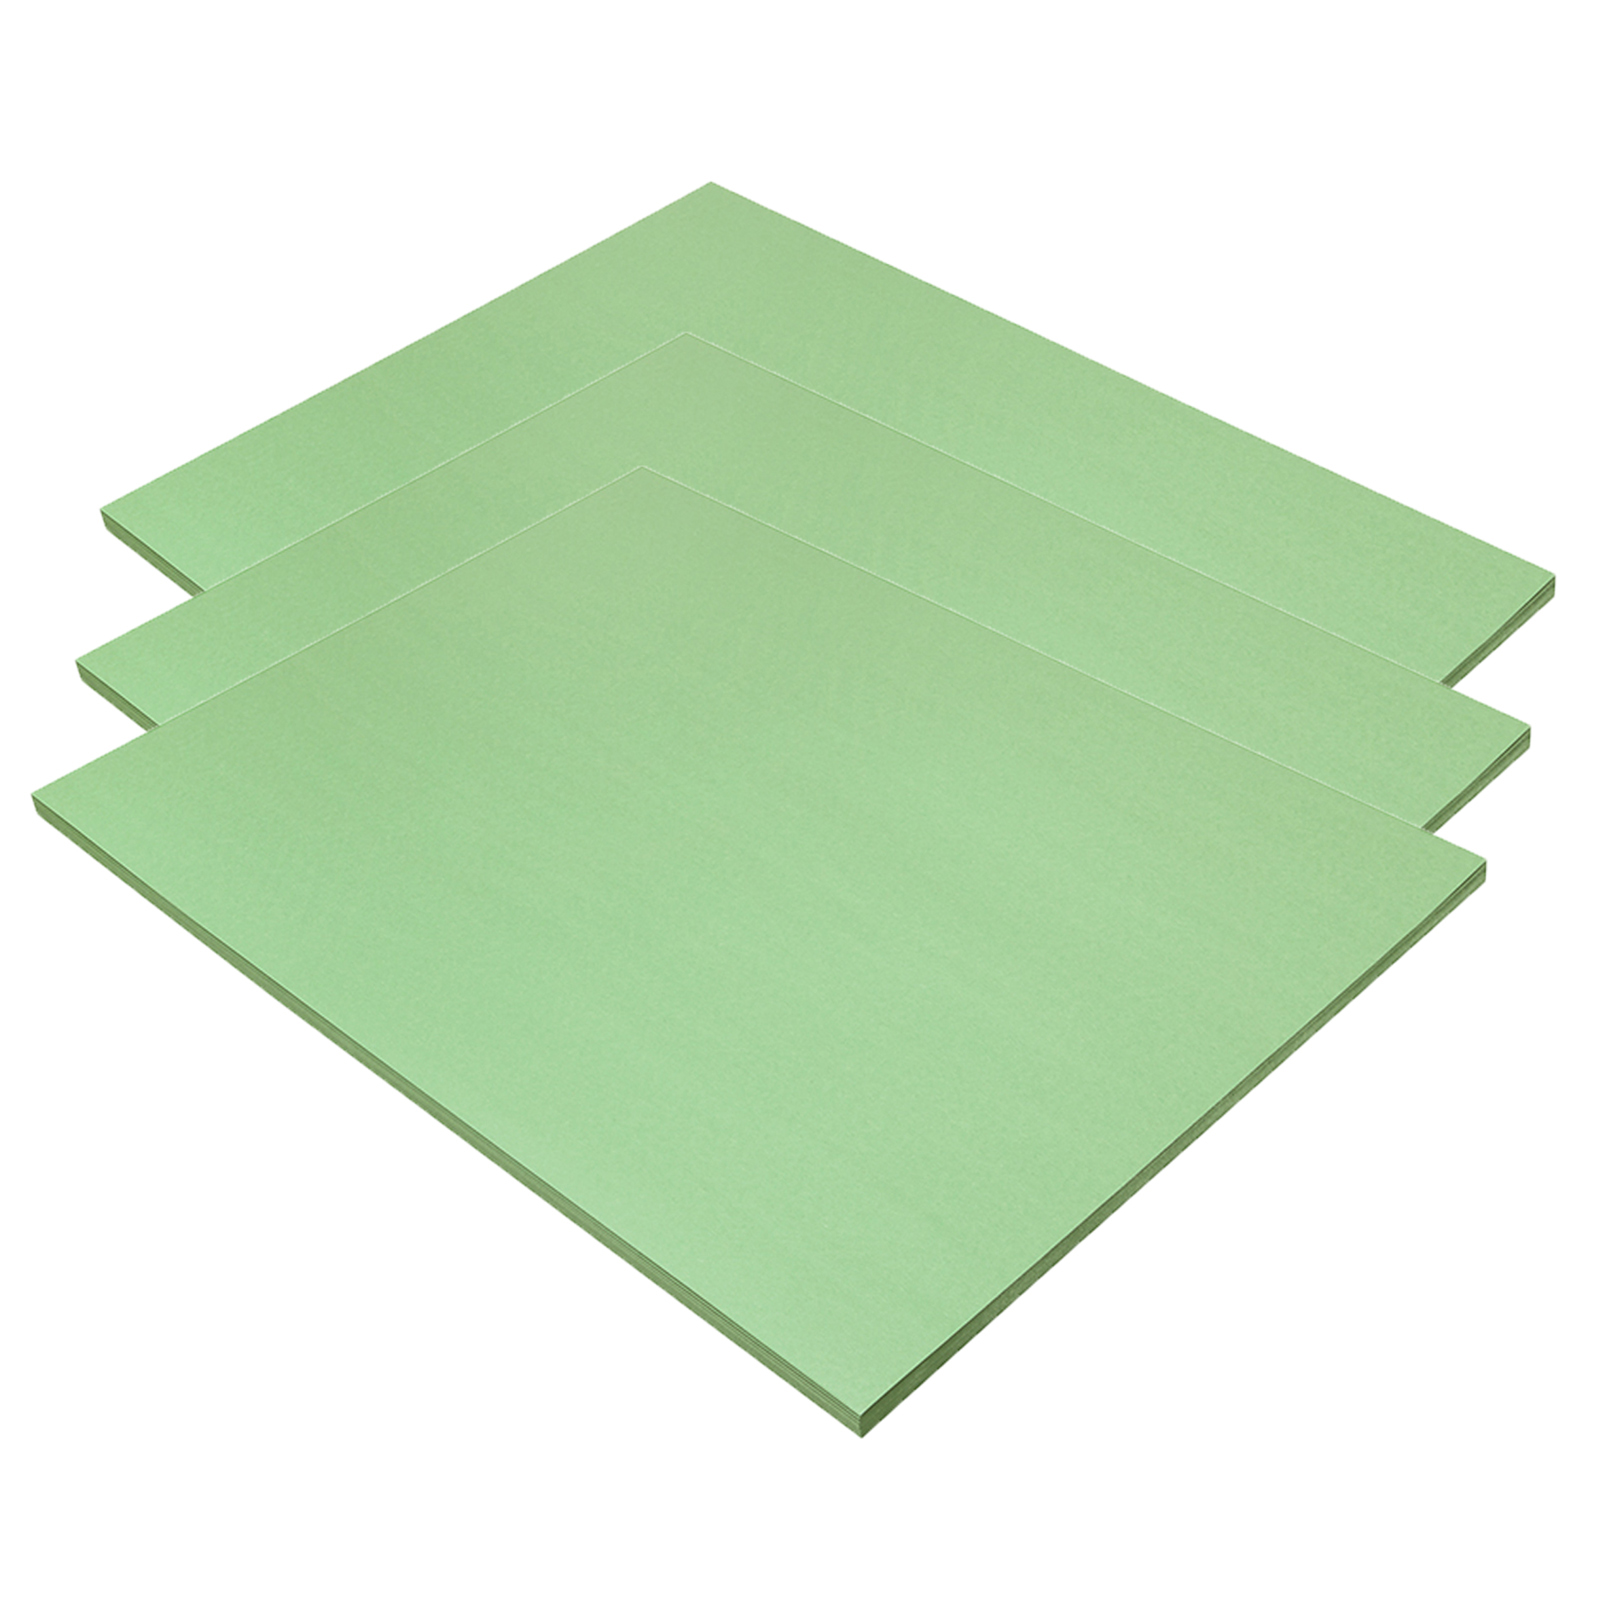 SunWorks® 18 x 24 Light Green Construction Paper, 3 Packs of 50 Sheets